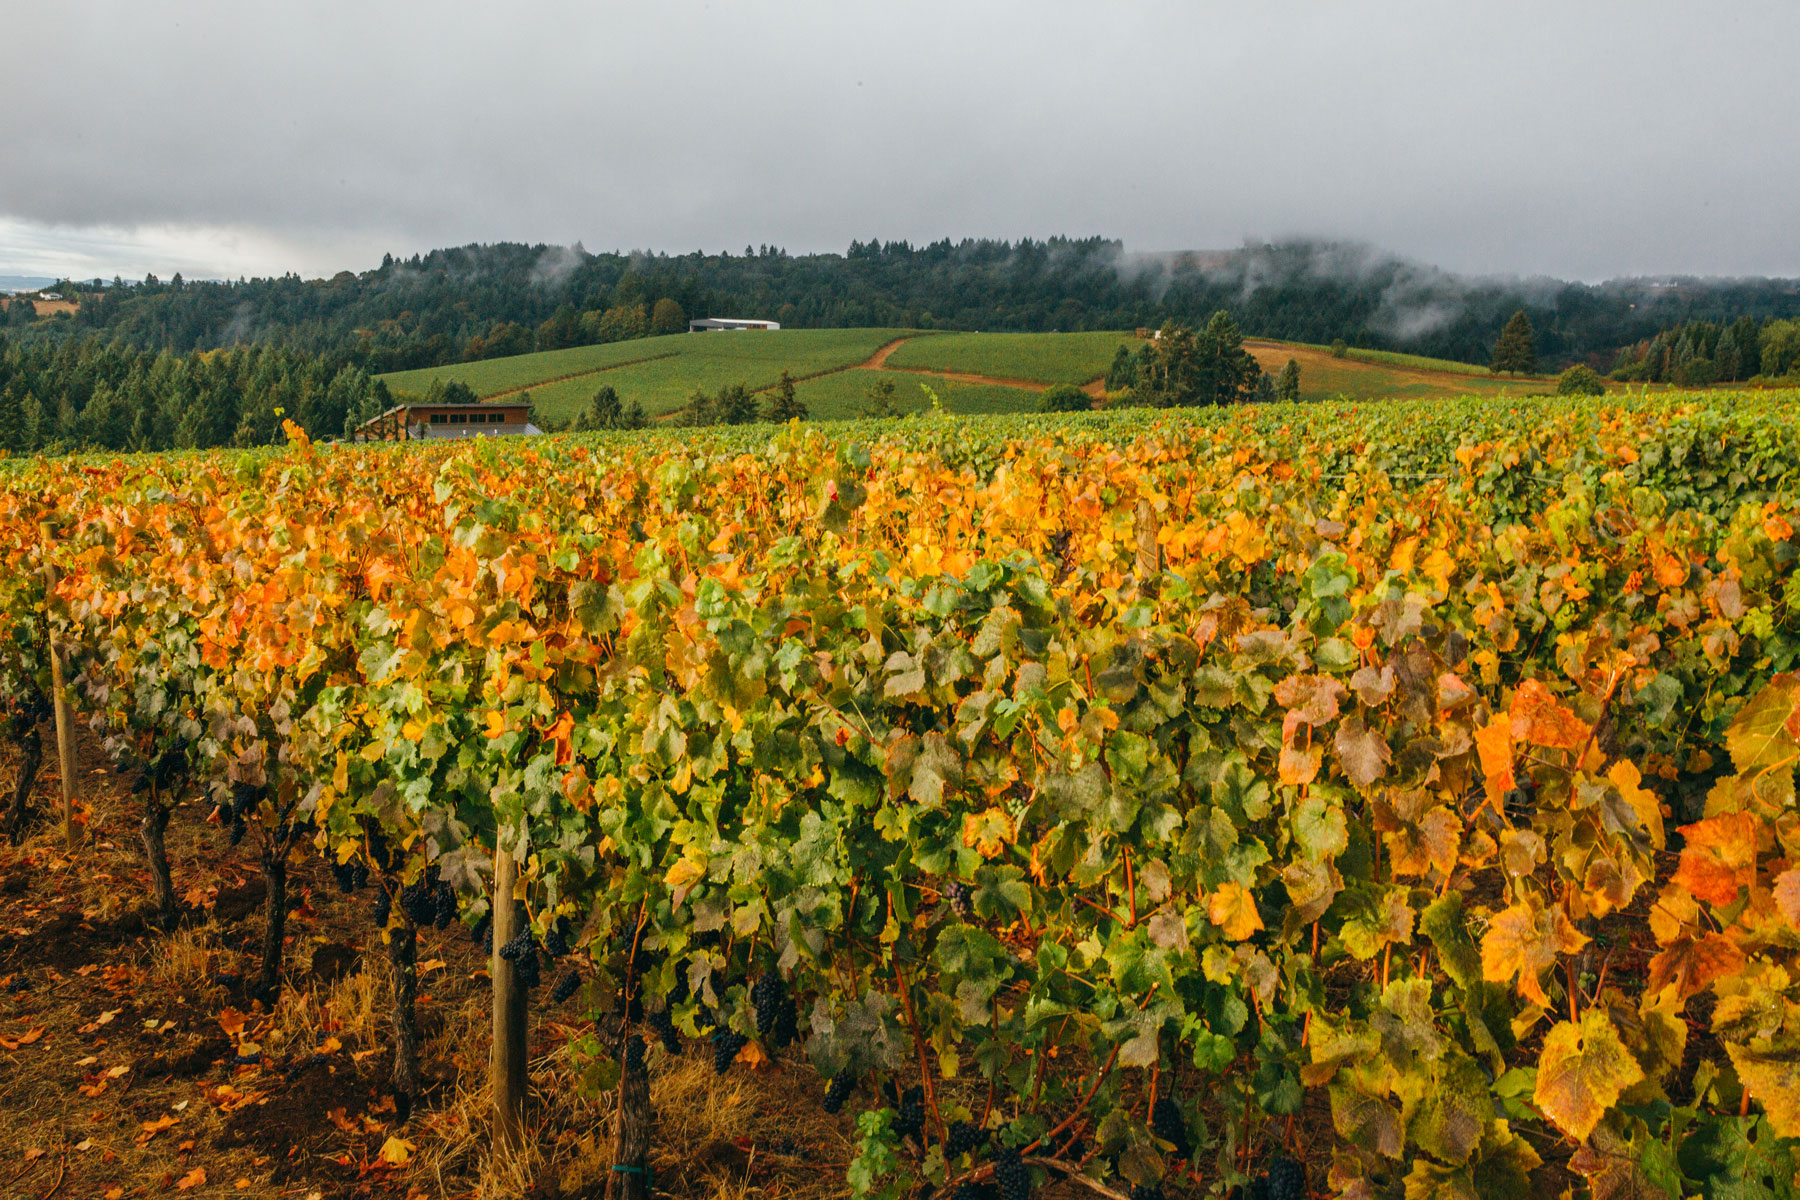 Vineyards in California, Oregon, and Colorado